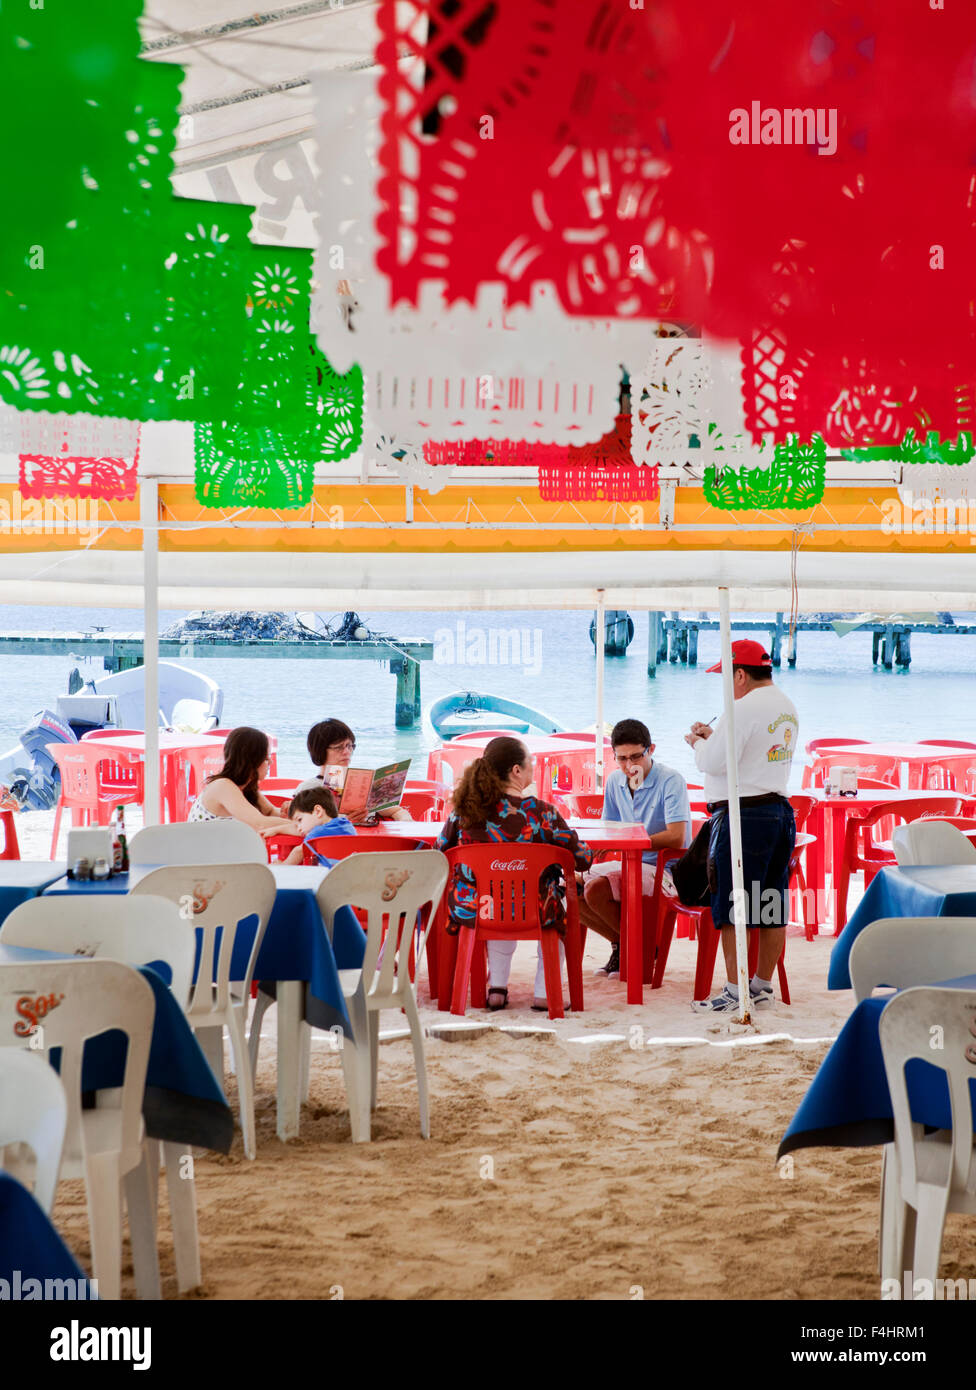 Kunden geben ihre Bestellung auf Minino, unter freiem Himmel, Zelt-Stil-Meeresfrüchte-Restaurant in der Nähe der Docks von Isla Mujeres, Mexiko Stockfoto